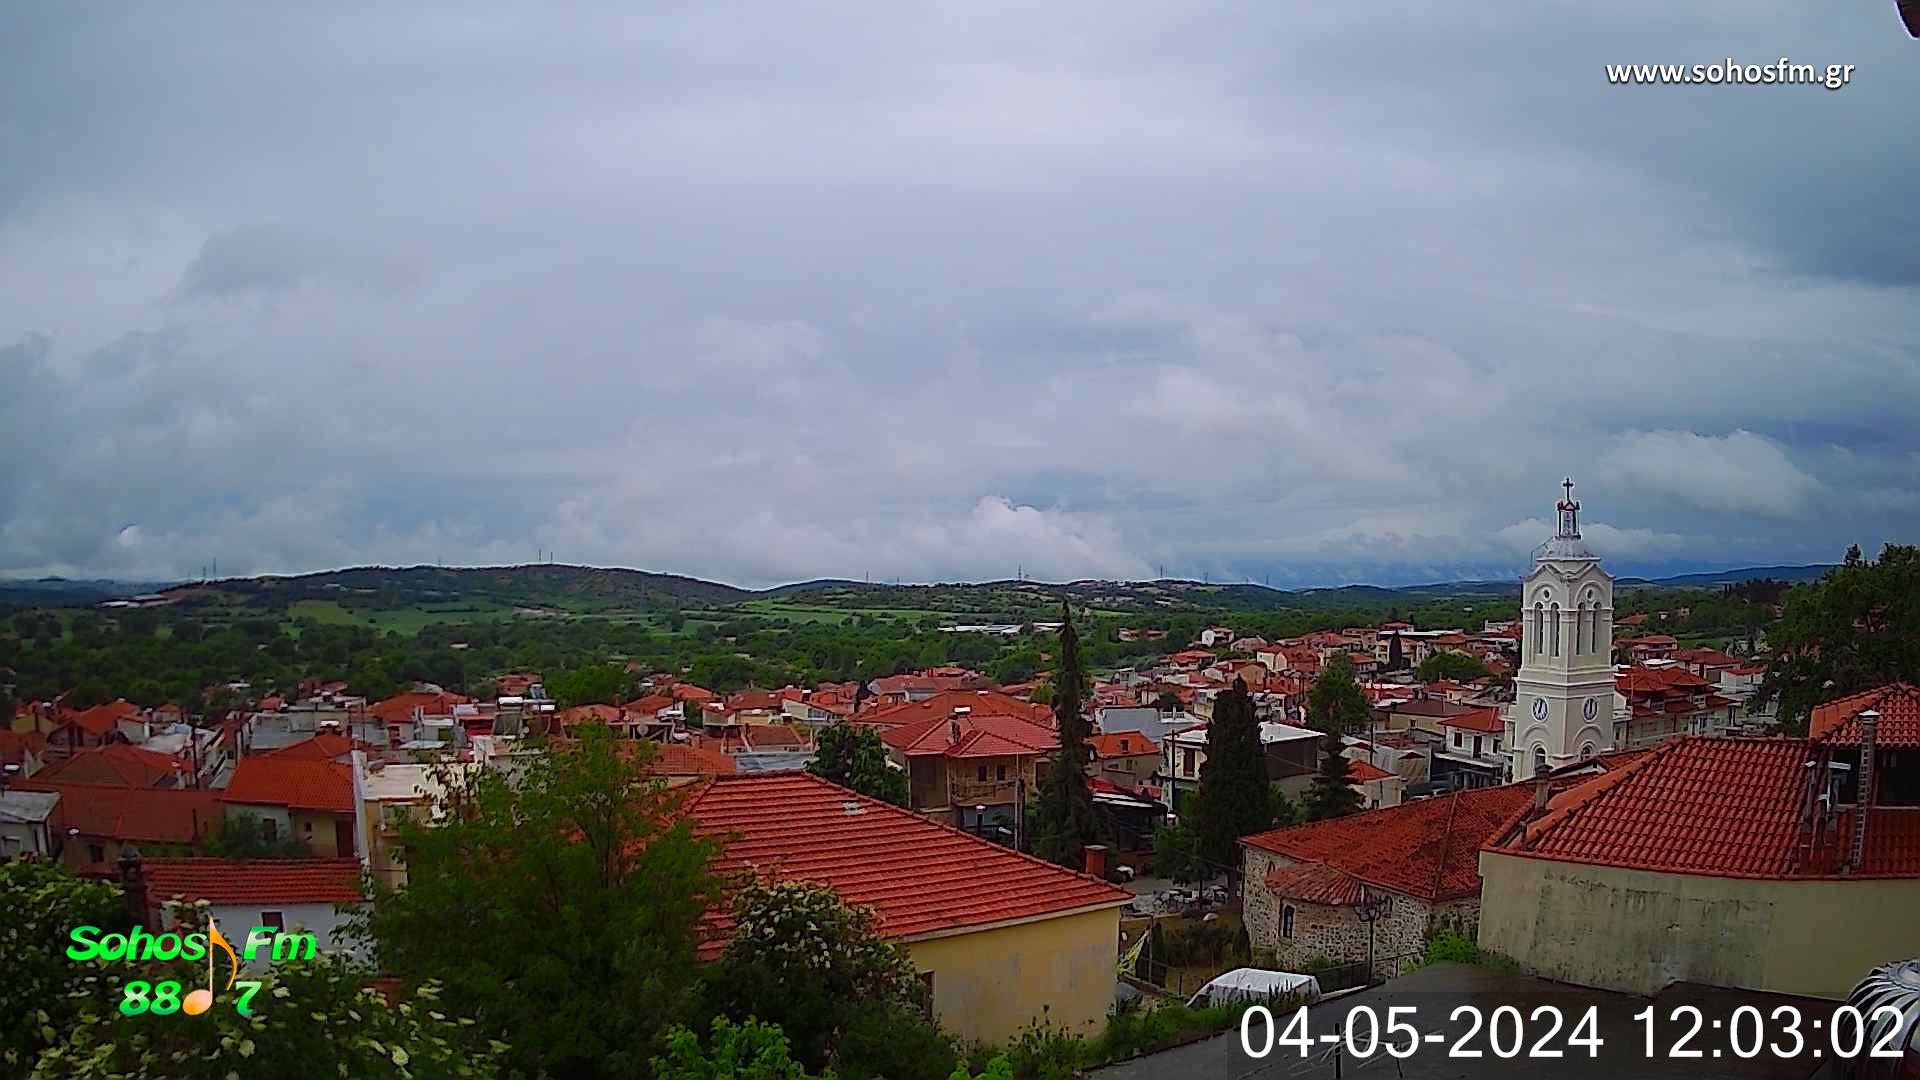 Webcam Sochos - Thessaloniki